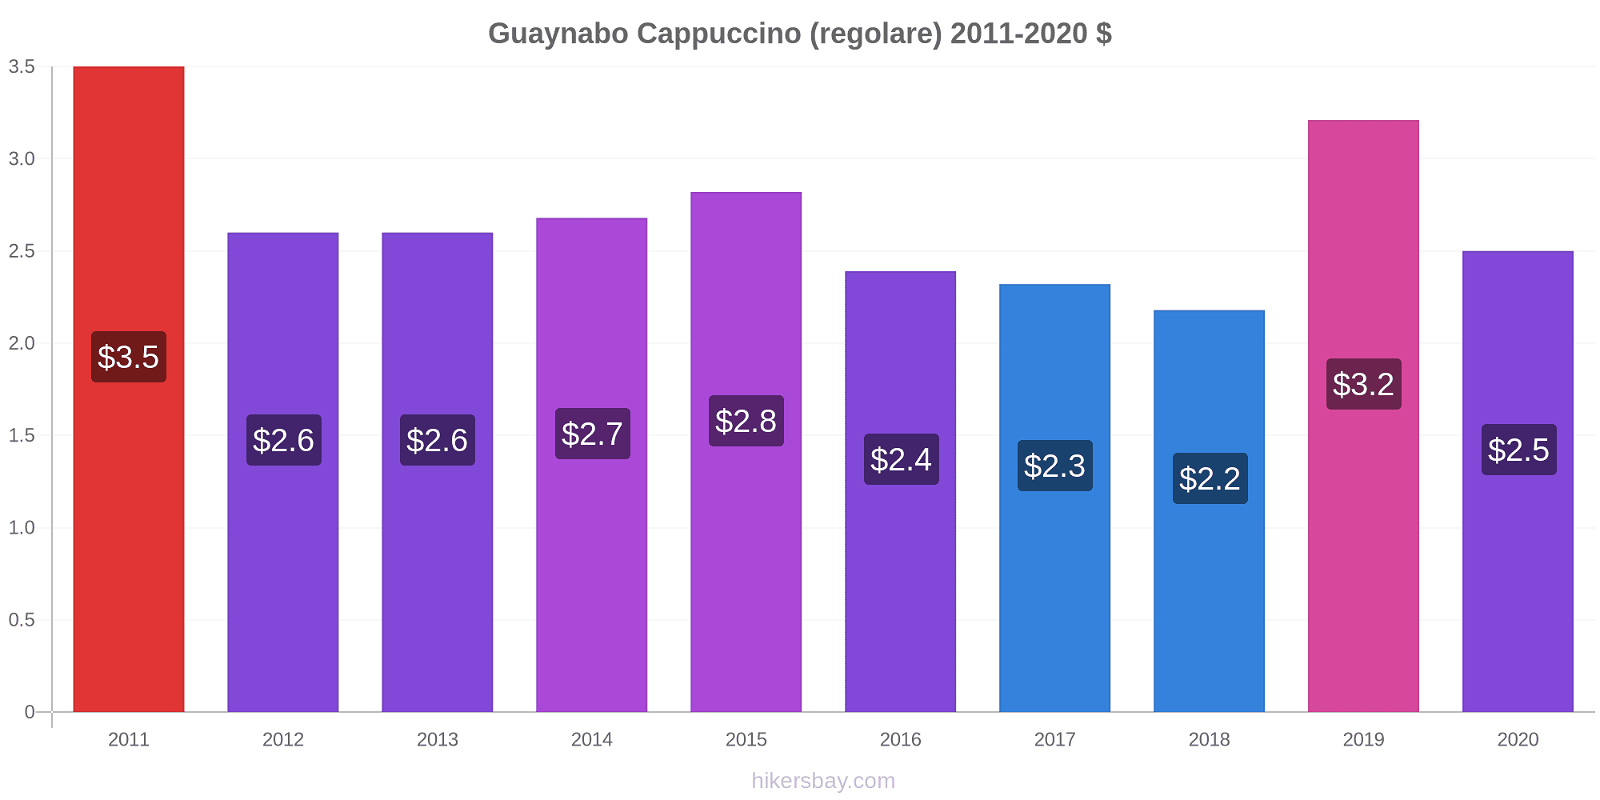 Guaynabo variazioni di prezzo Cappuccino (normale) hikersbay.com